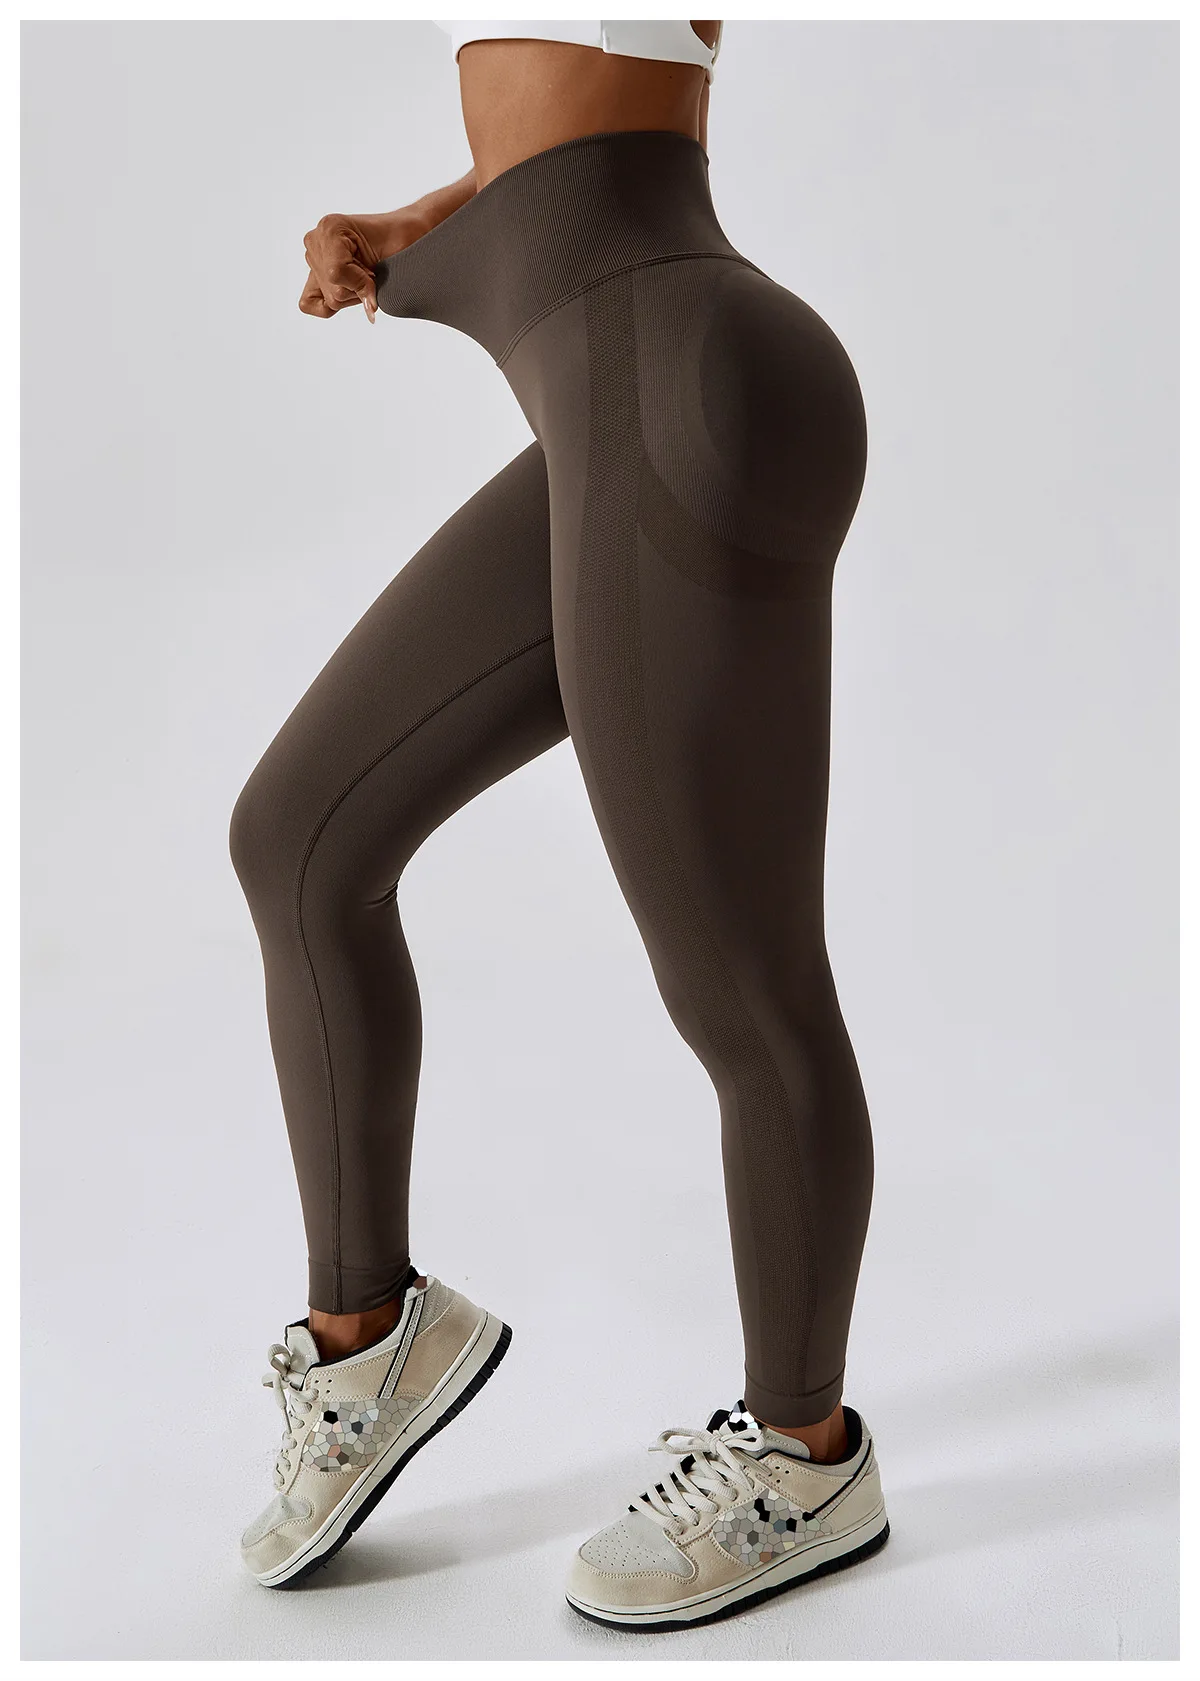 Aola Seamless Leggings Fitness Wear Women Leggings Workout Scrunch ...